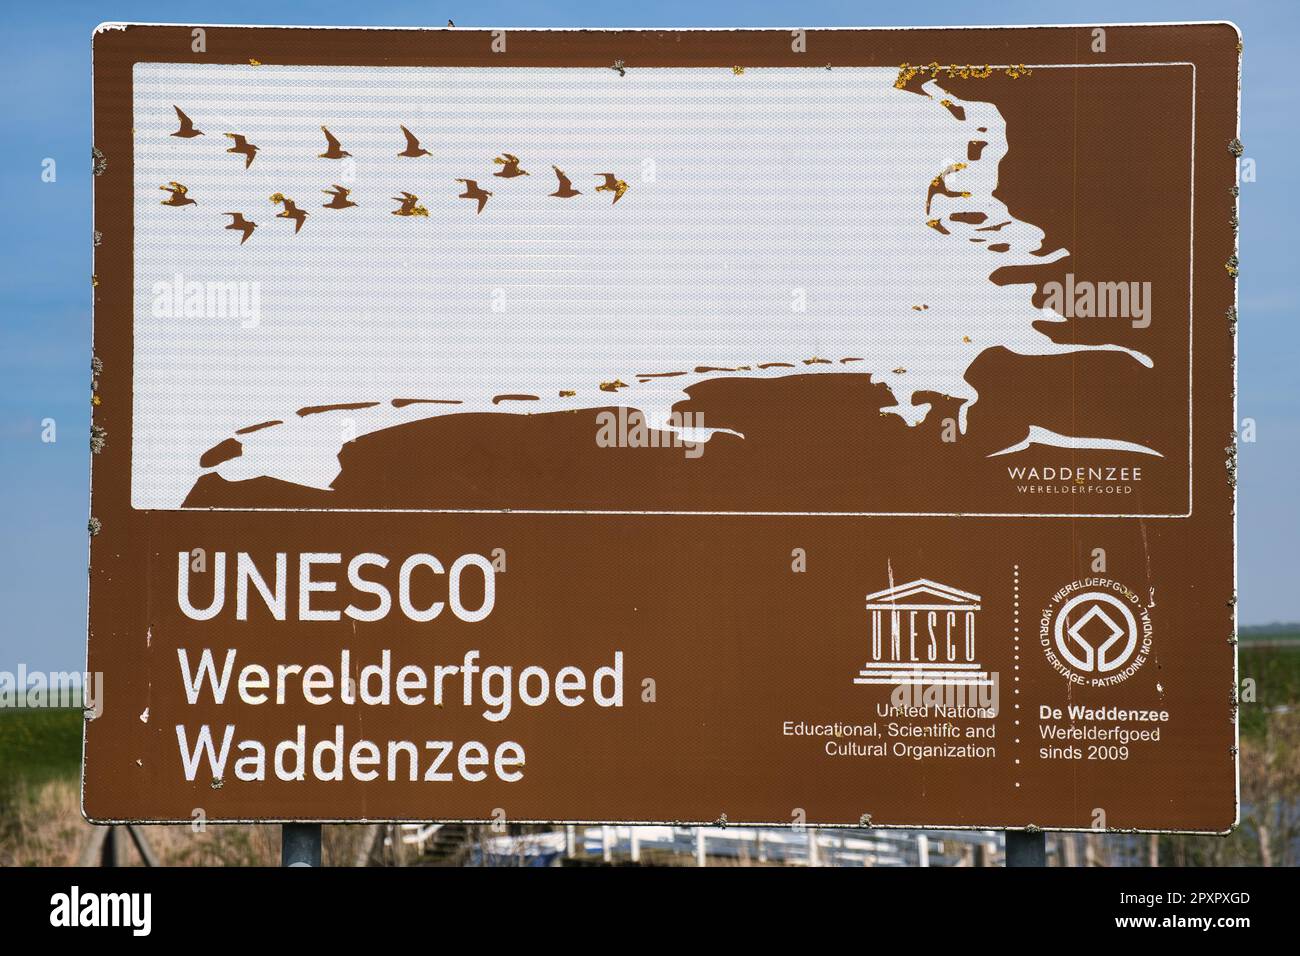 Signe de la région du Waddenzee (mer des Wadden) classée au patrimoine mondial de l'UNESCO dans le nord des pays-Bas et le nord-ouest de l'Allemagne Banque D'Images